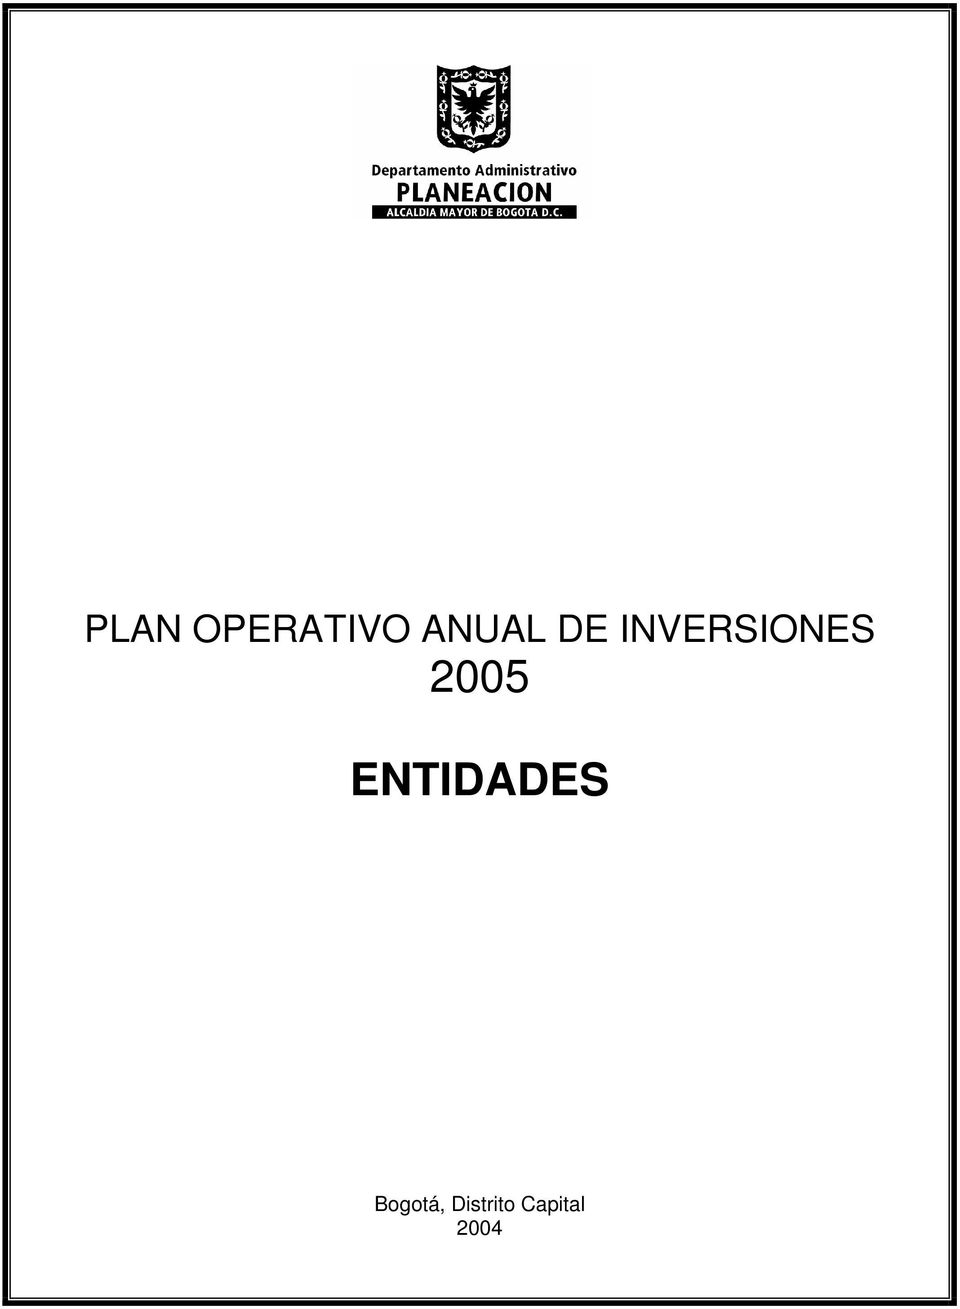 INVERSIONES 2005